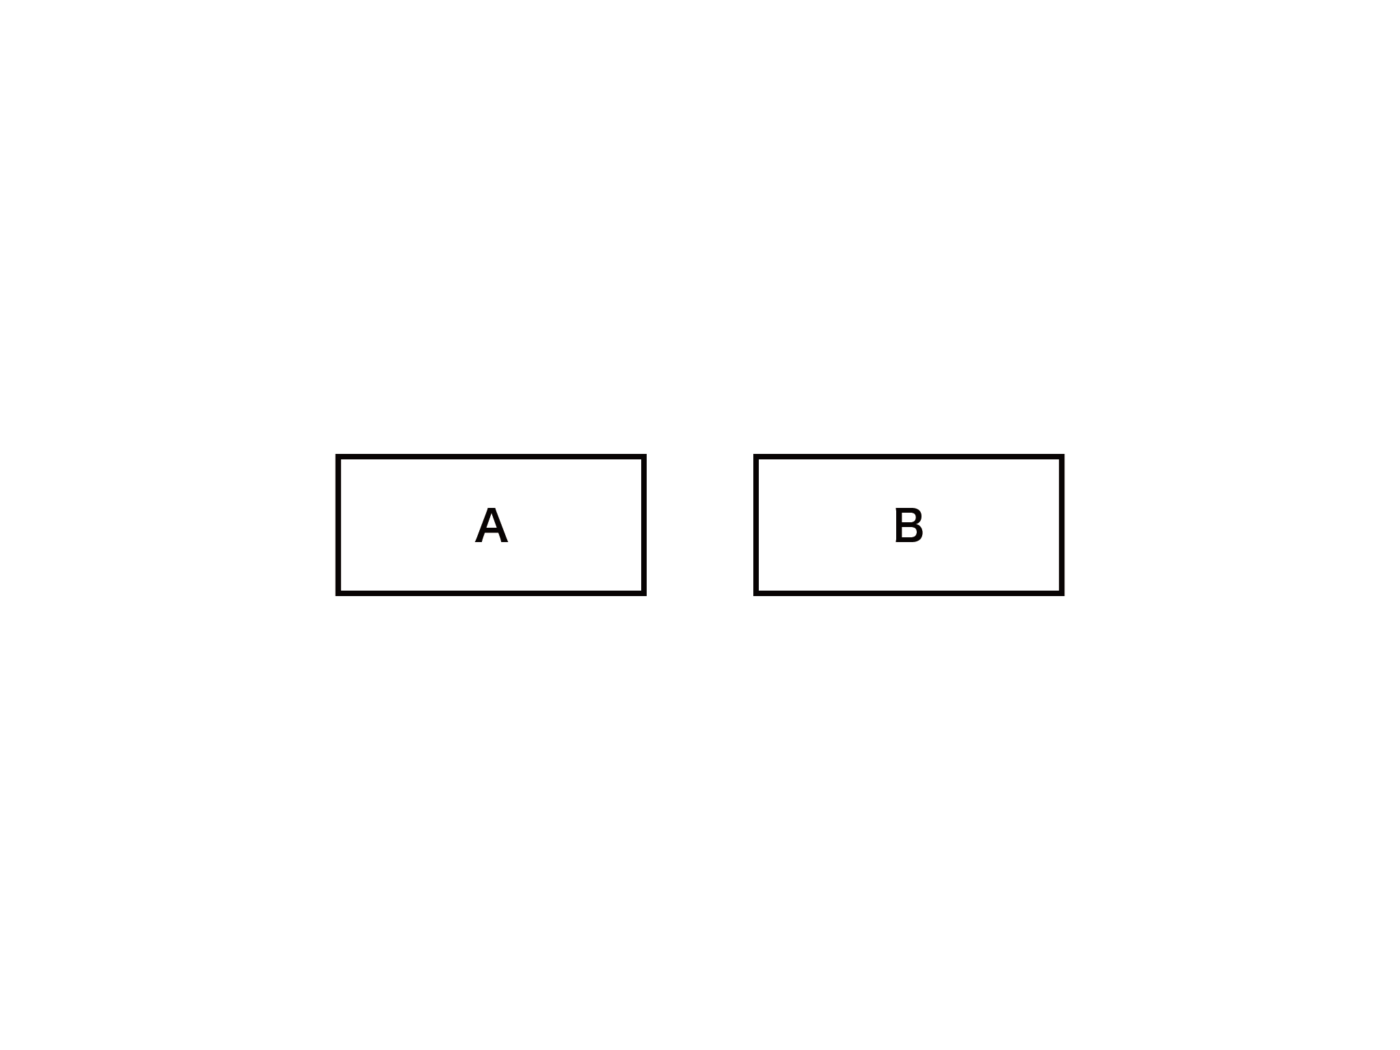 二つのクラスを示している。四角にA,四角にBと書かれていてそれぞれ独立している。